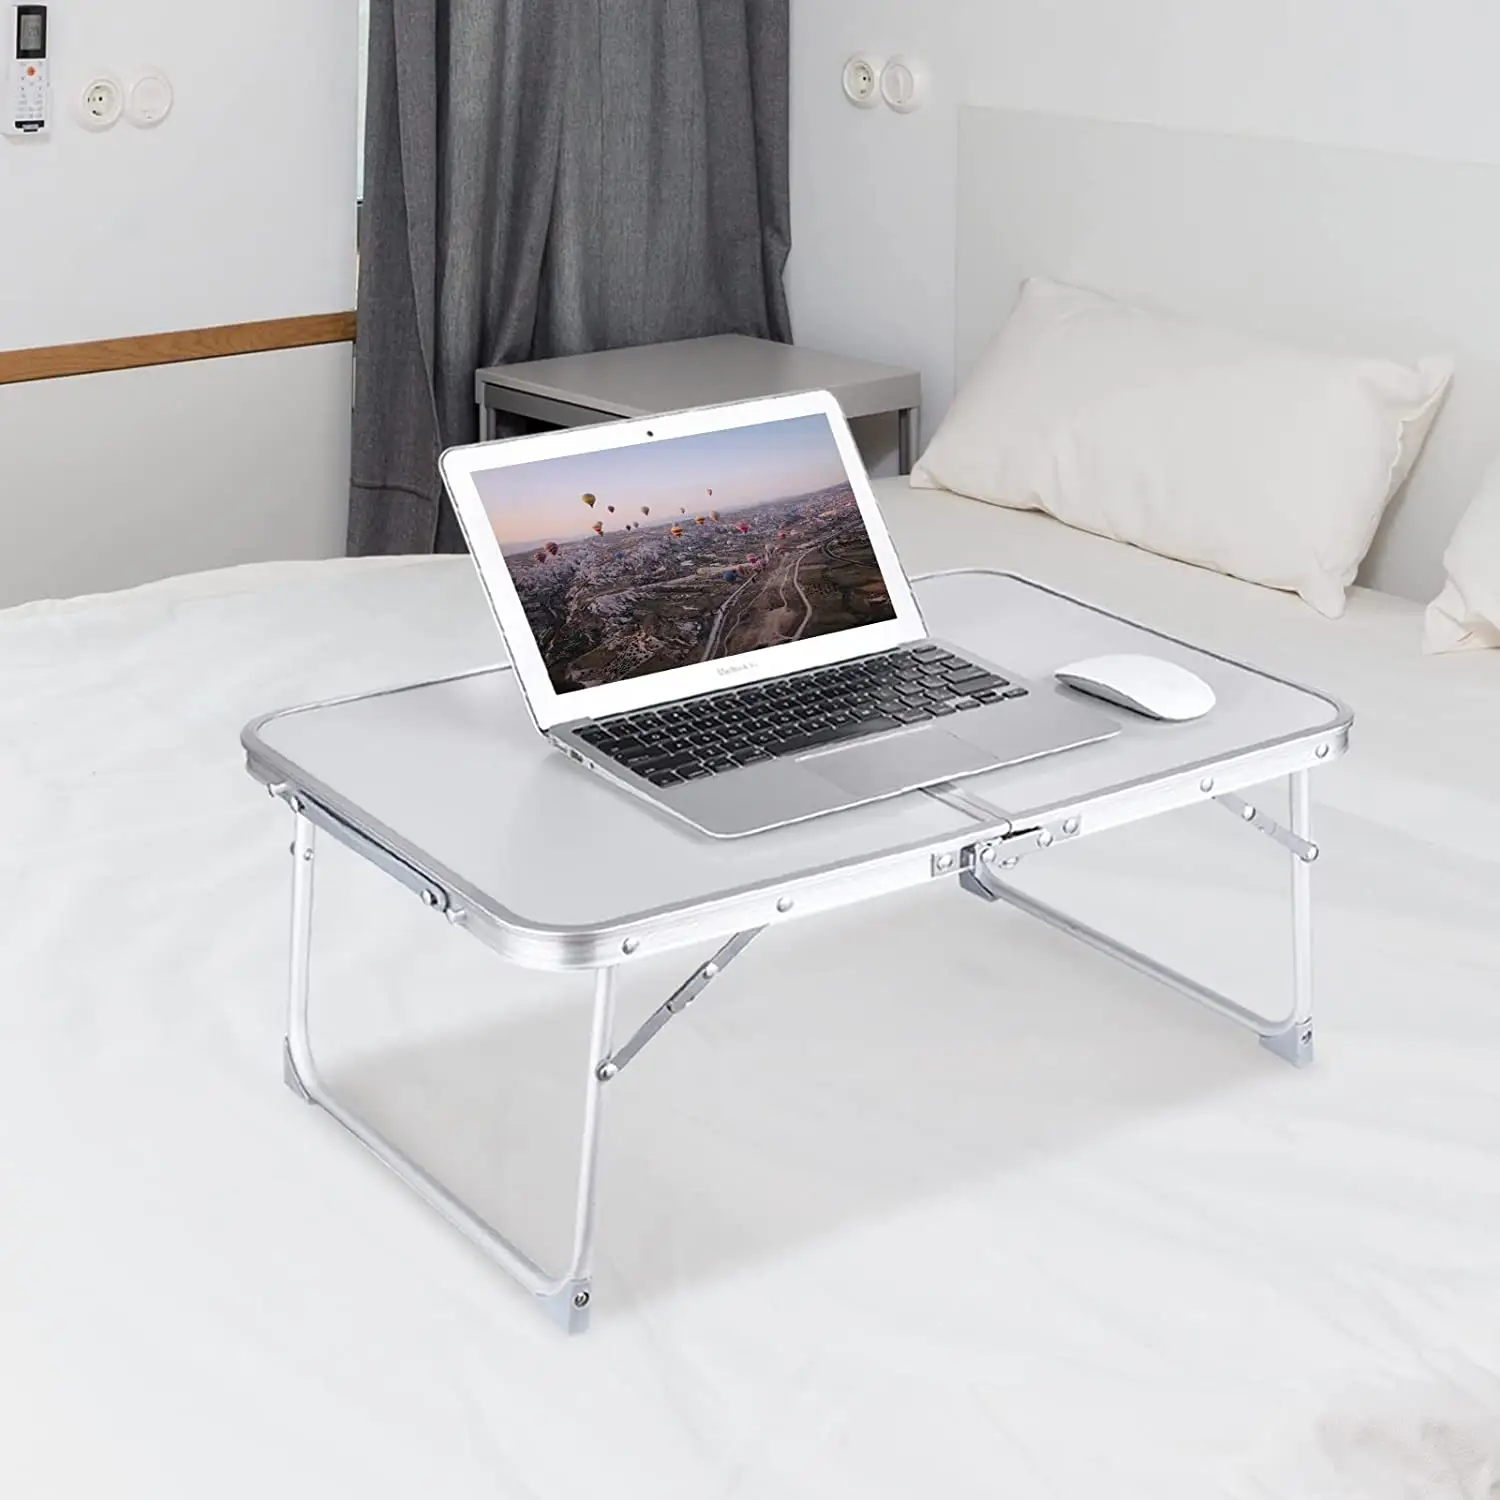 새로운 디자인 접이식 침대 노트북 테이블 접이식 다리와 휴대용 미니 침대 트레이 테이블